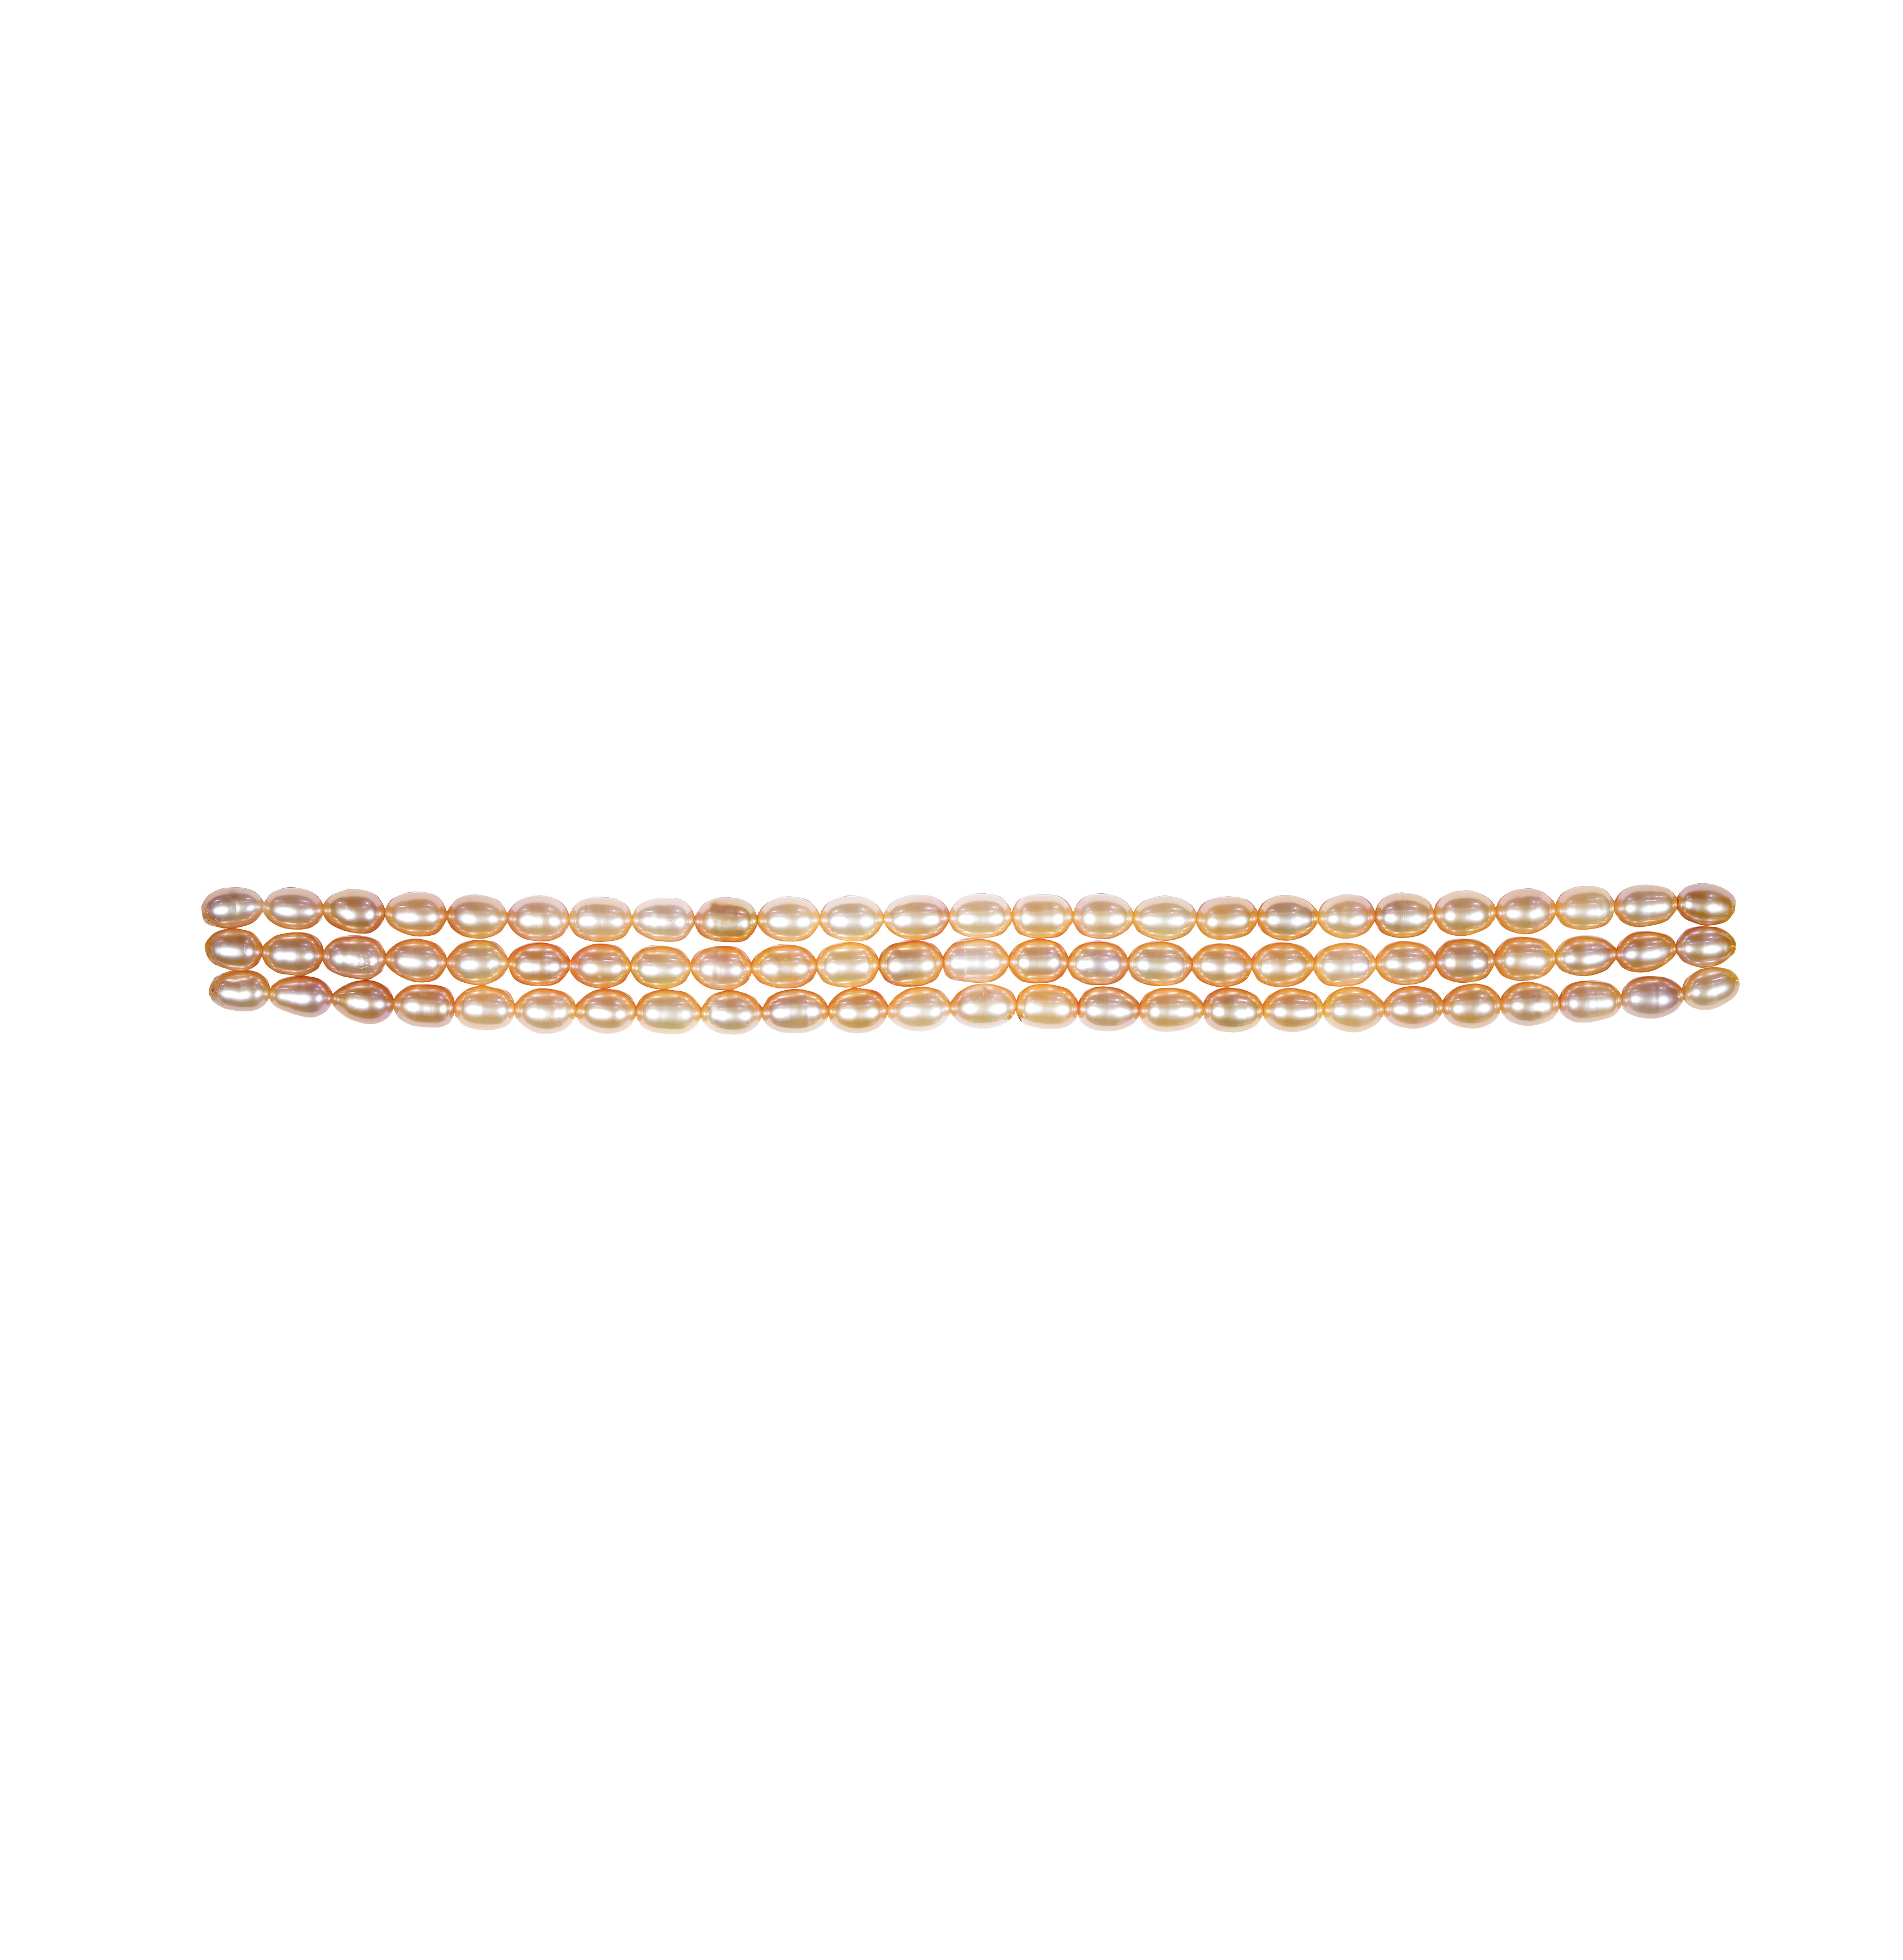 Pearl Bracelet Gold - Bracelets for Women - Jewelry Pearls